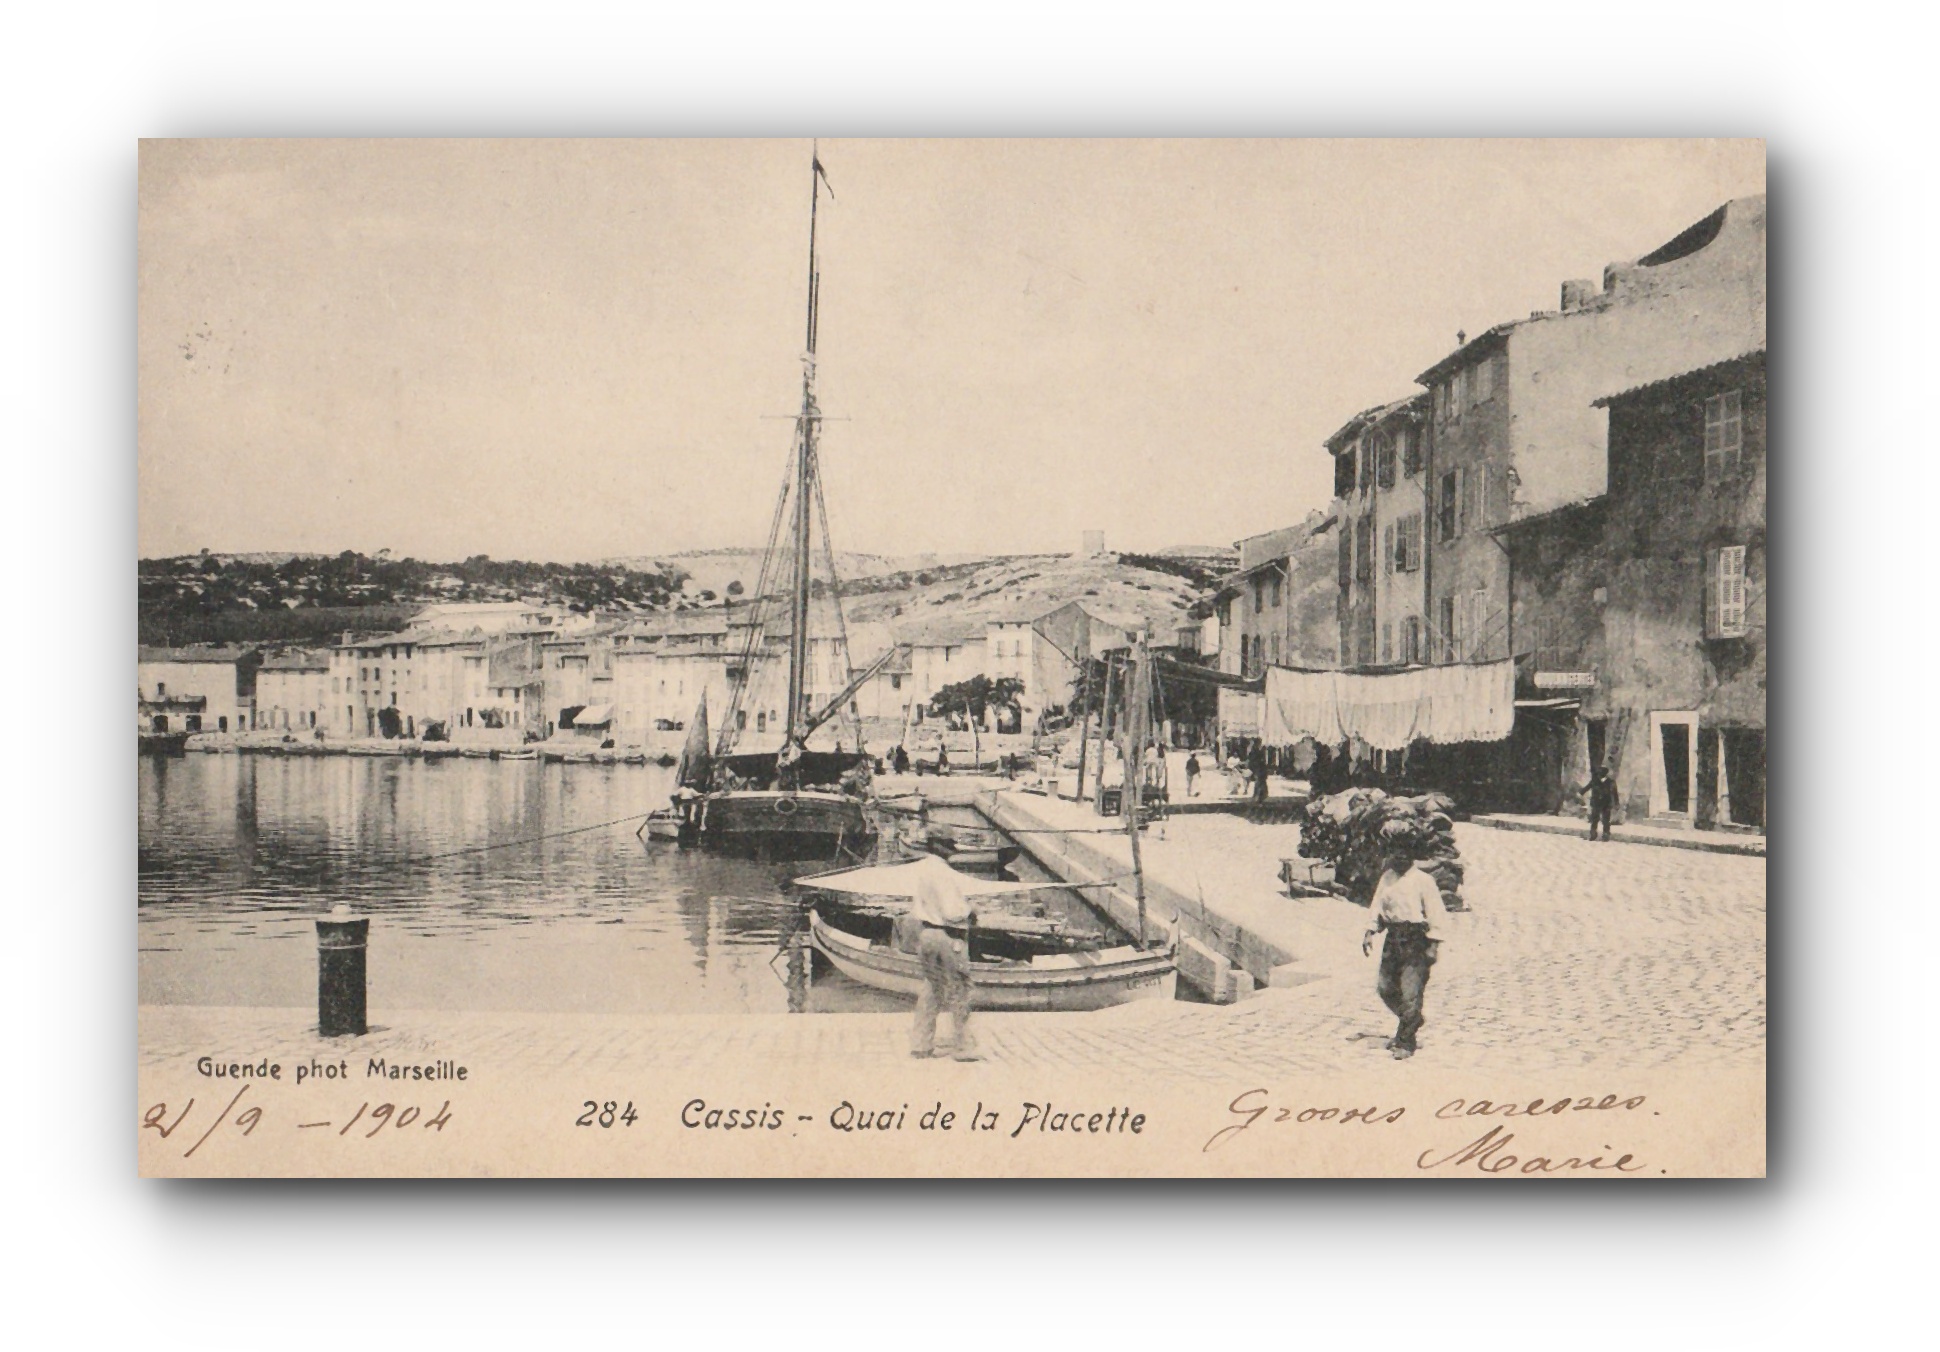 - Quai de la Placette - Cassis - 02.09.1904 -